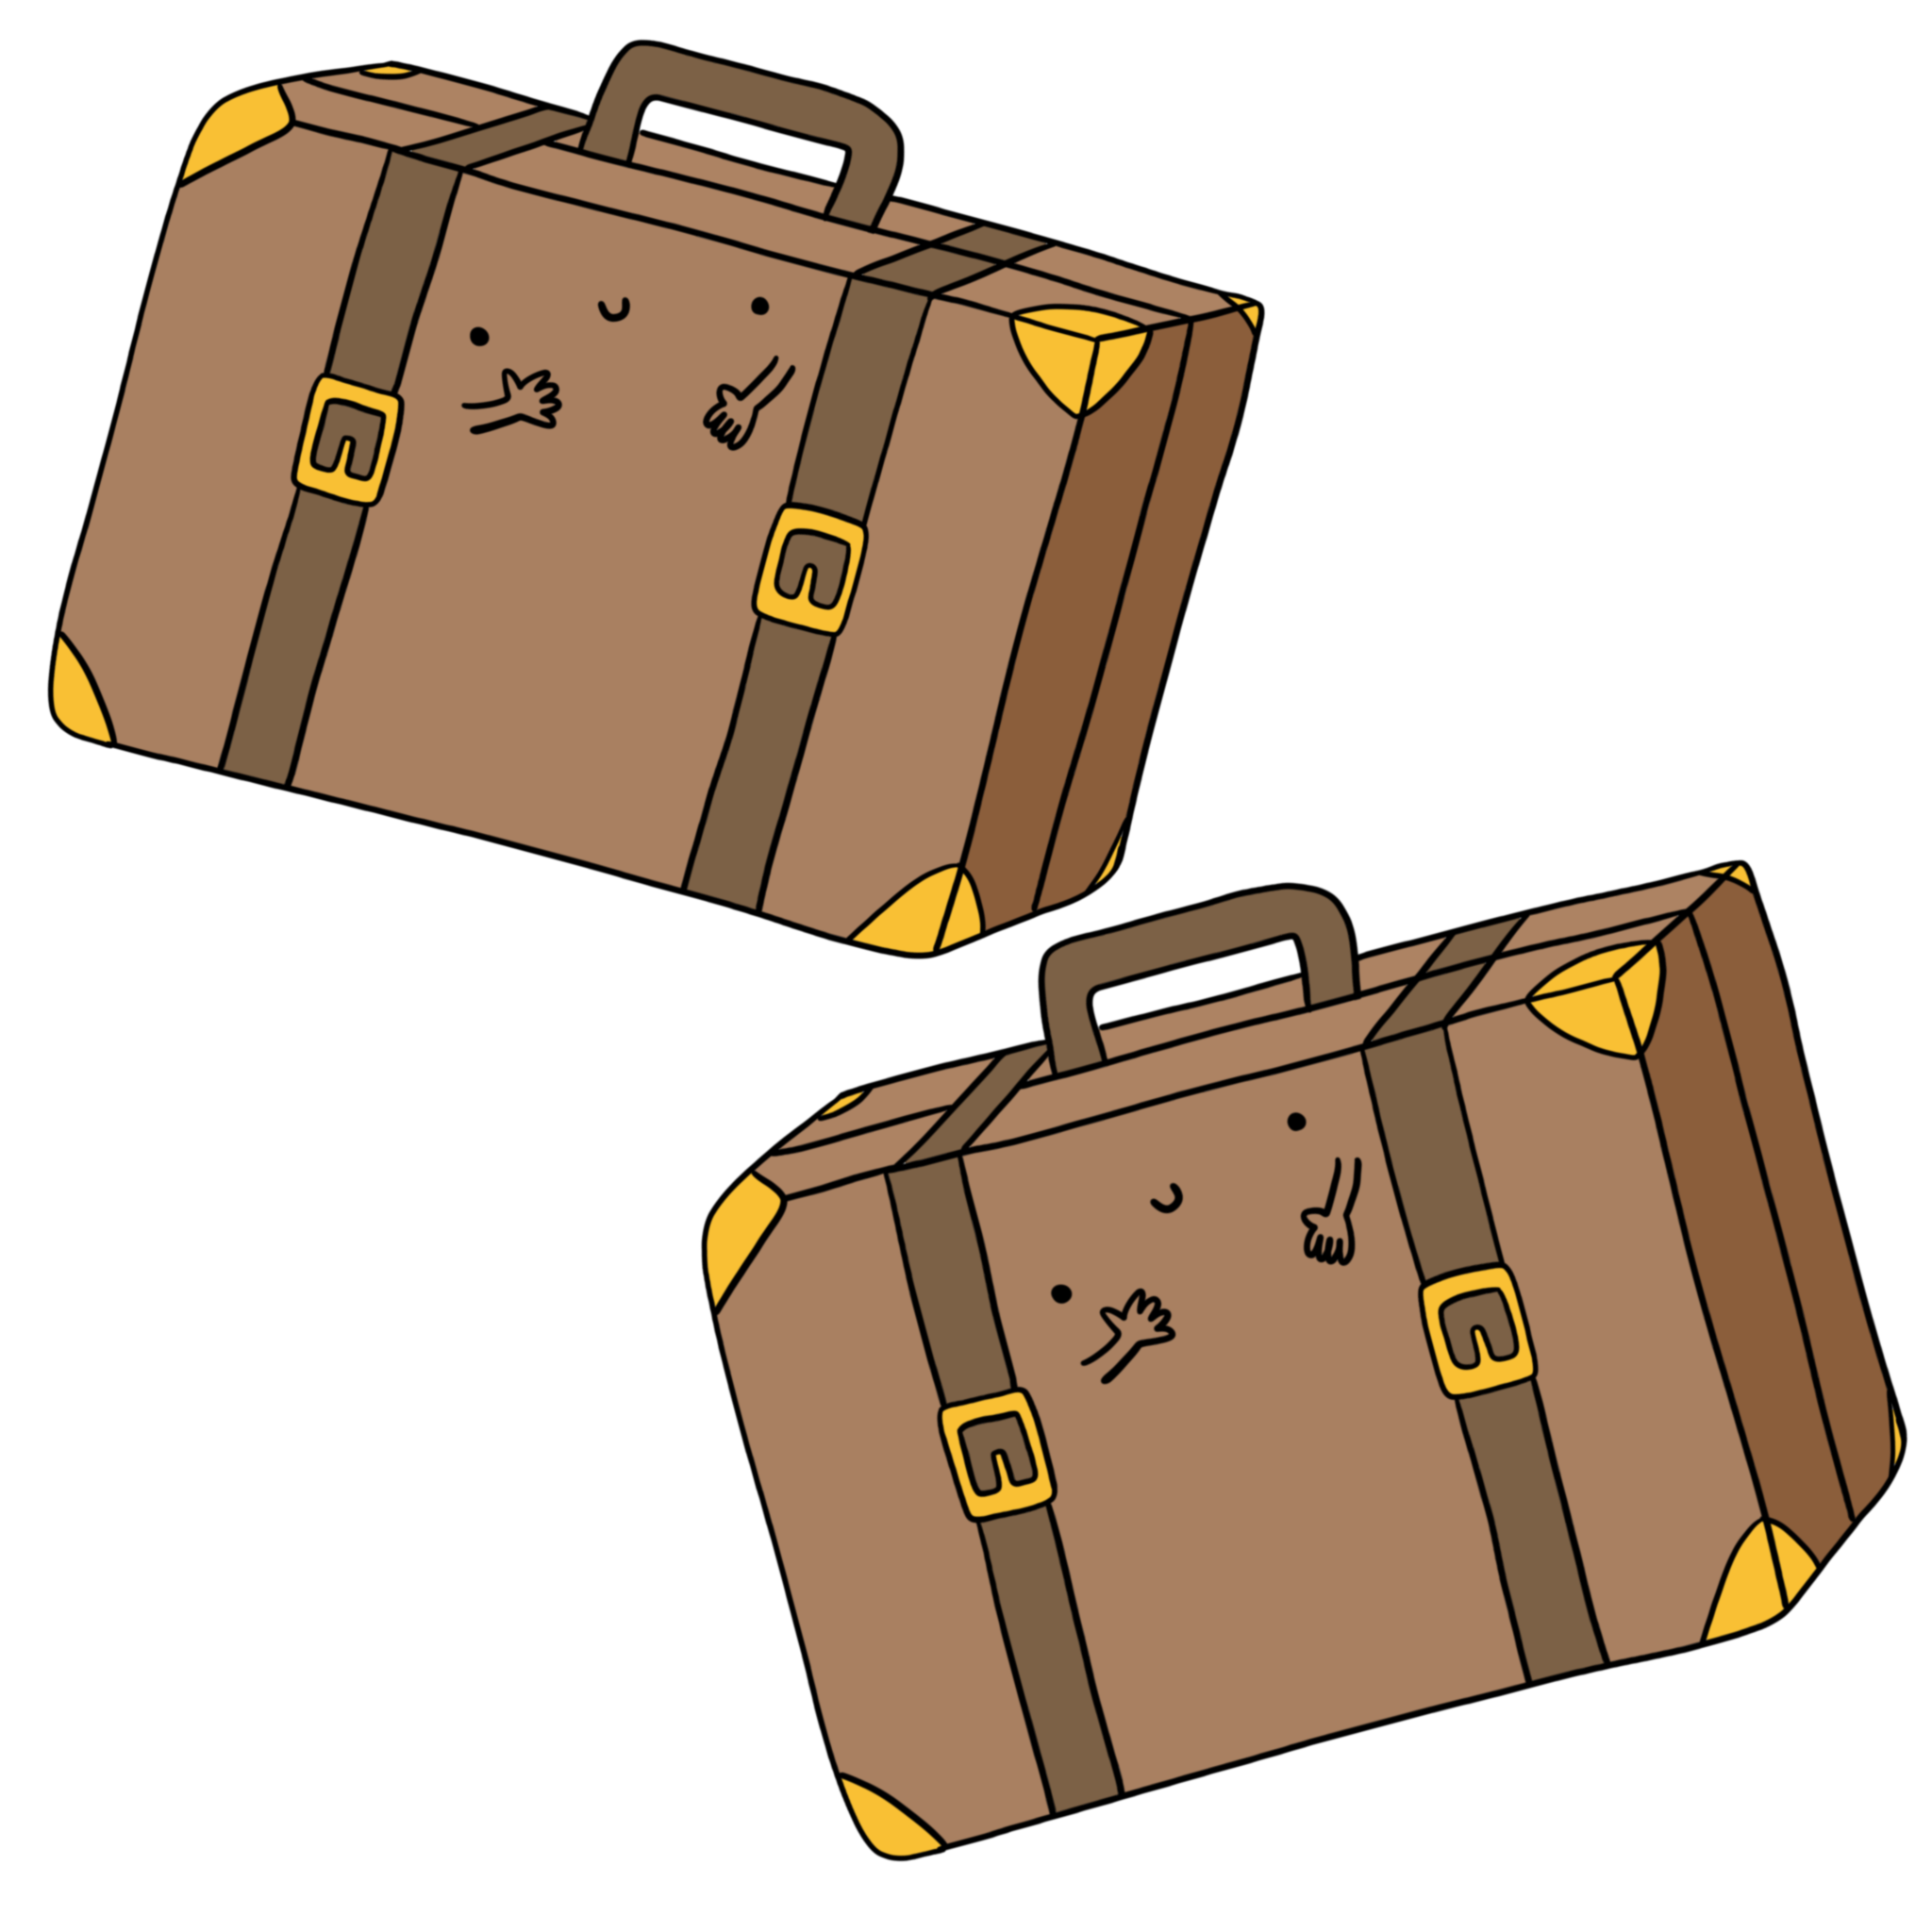 immagine valigie disegno valigie illustrazione a colori valigie